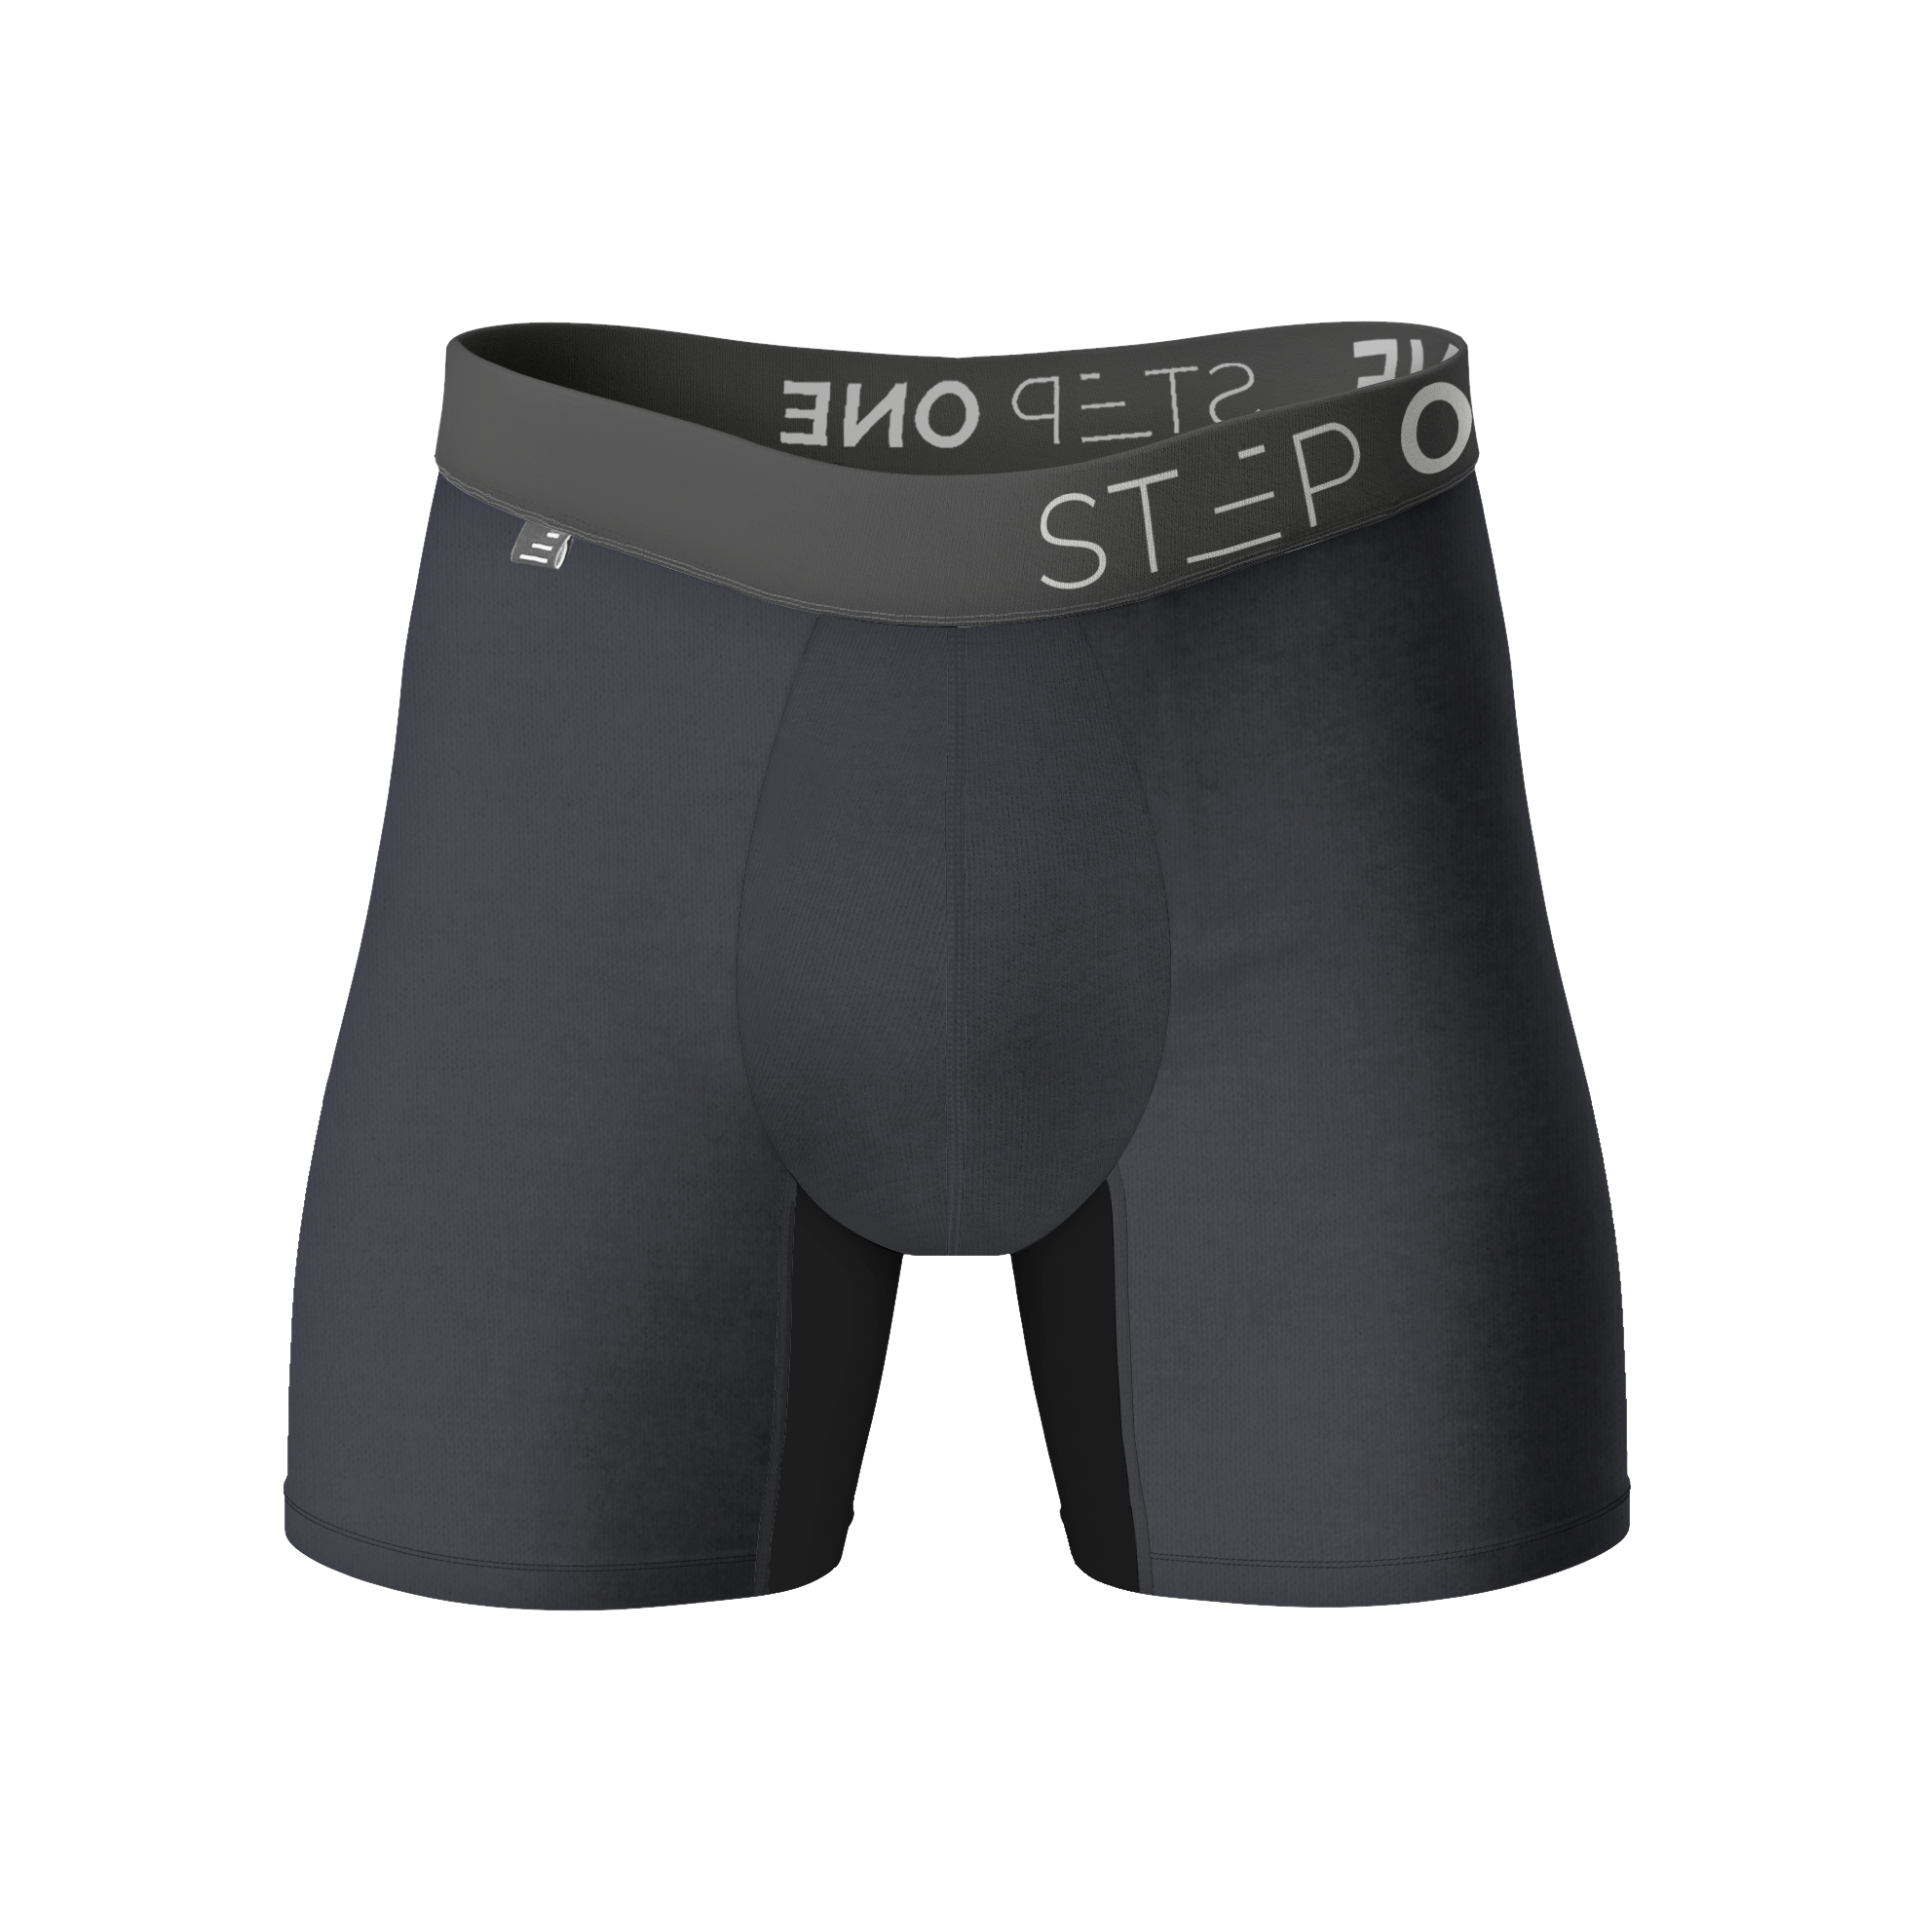 Boxer Brief - Hibiscus  Step One Men's Underwear